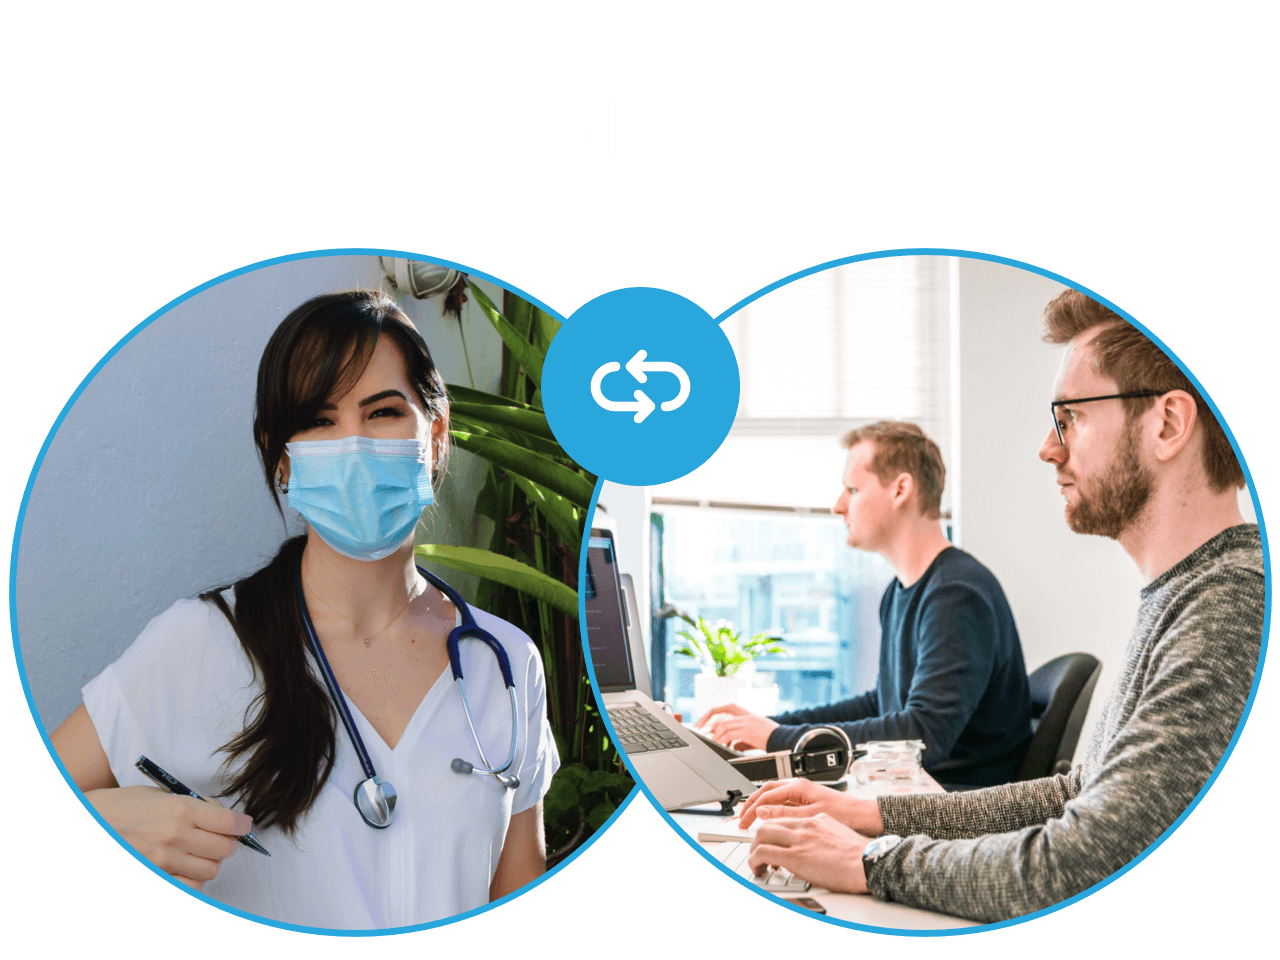 Carelever - Our Team